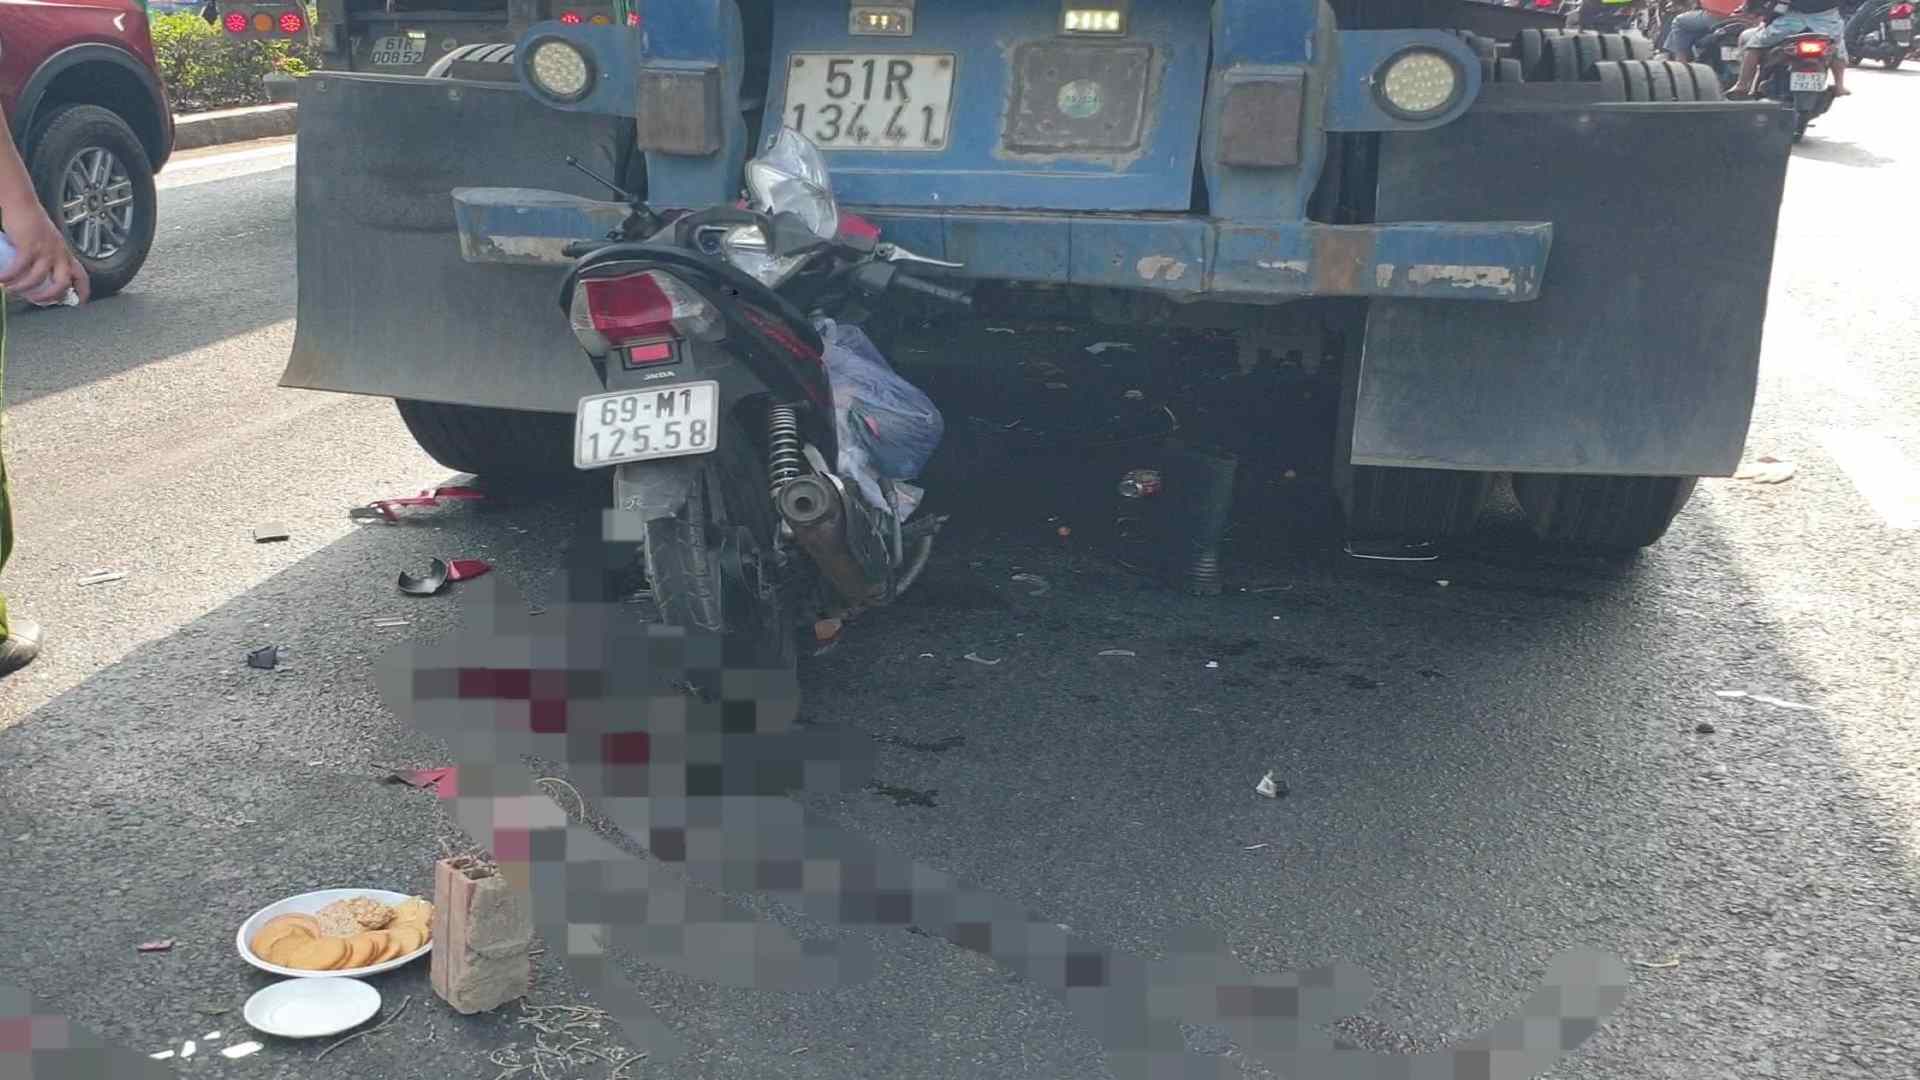 Hiện trường vụ tai nạn xe máy tông đuôi container khiến người đàn ông tử vong. Ảnh: Bạn đọc cung cấp